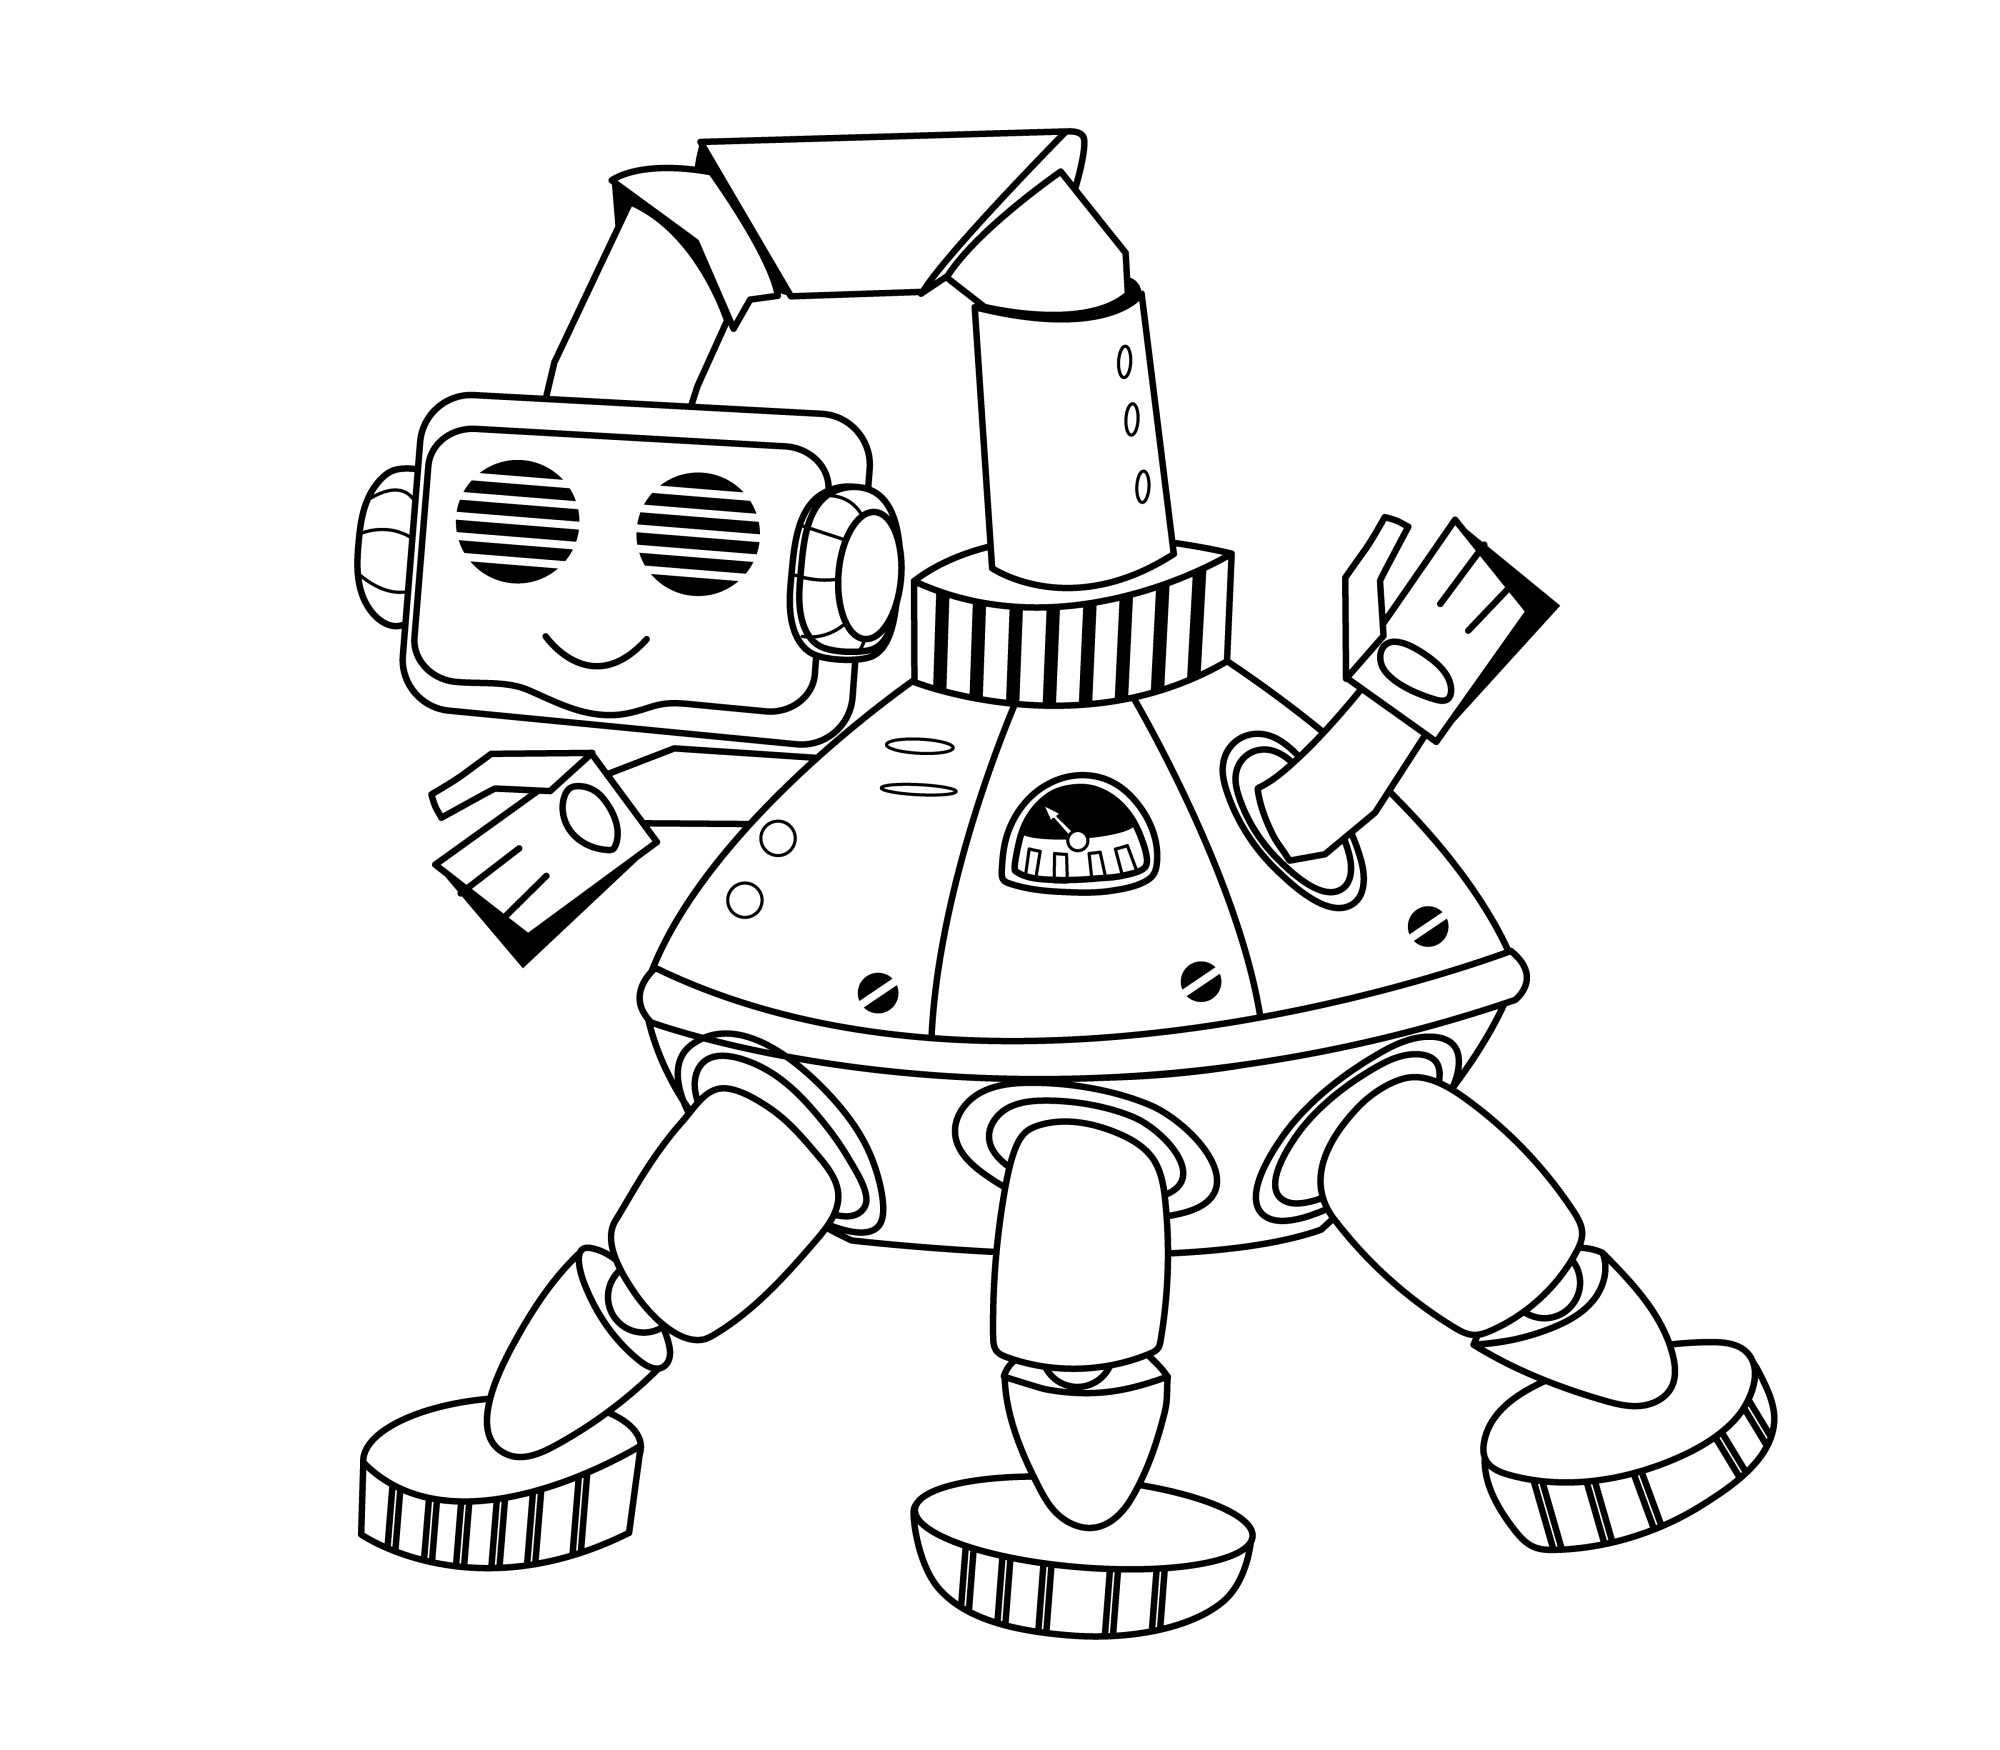 Раскраска для детей: милый робот мультипликатор